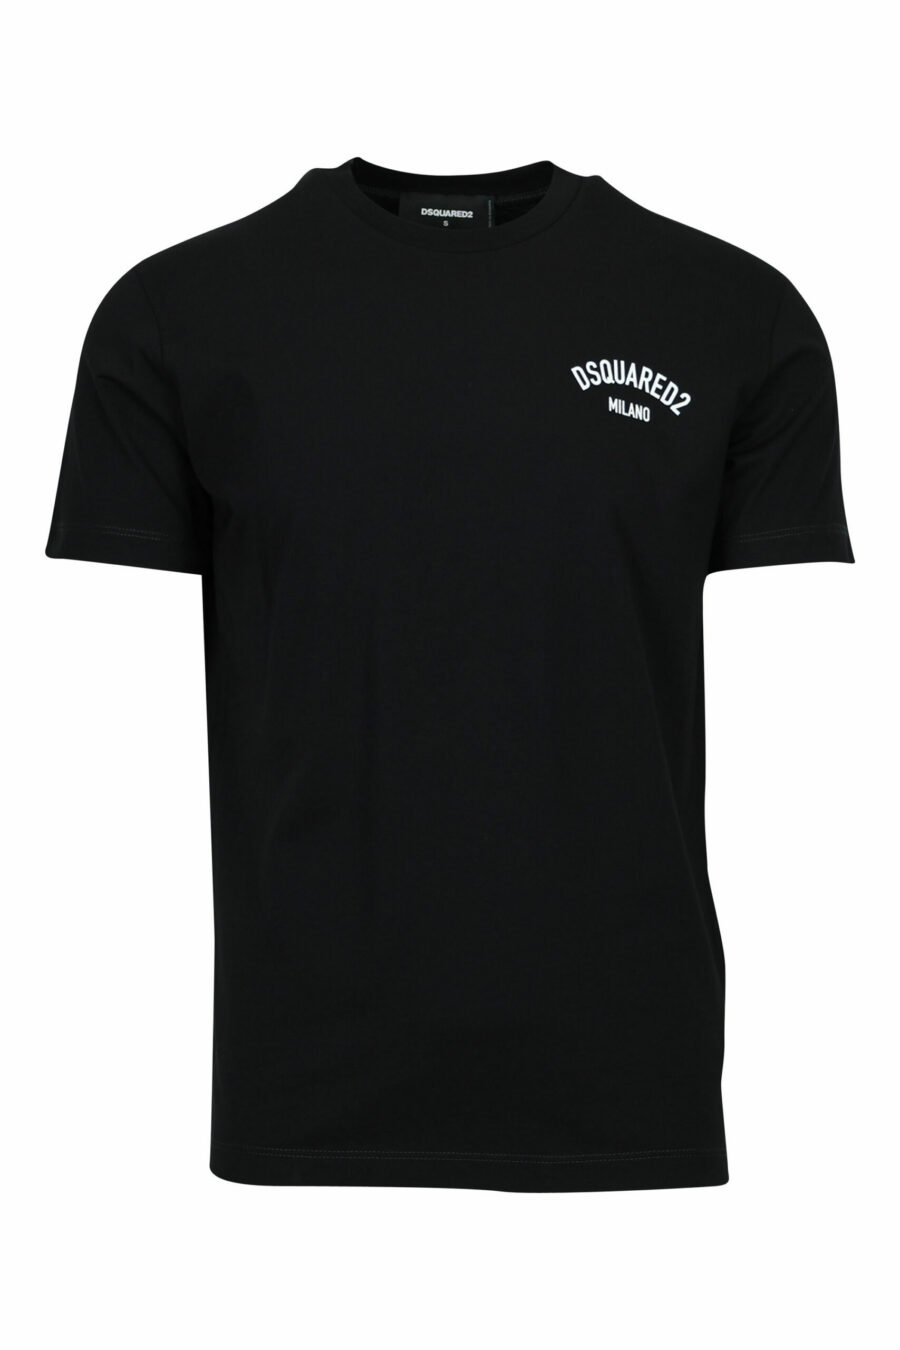 Schwarzes T-Shirt mit gefaltetem "milano"-Logo - 8054148571047 skaliert